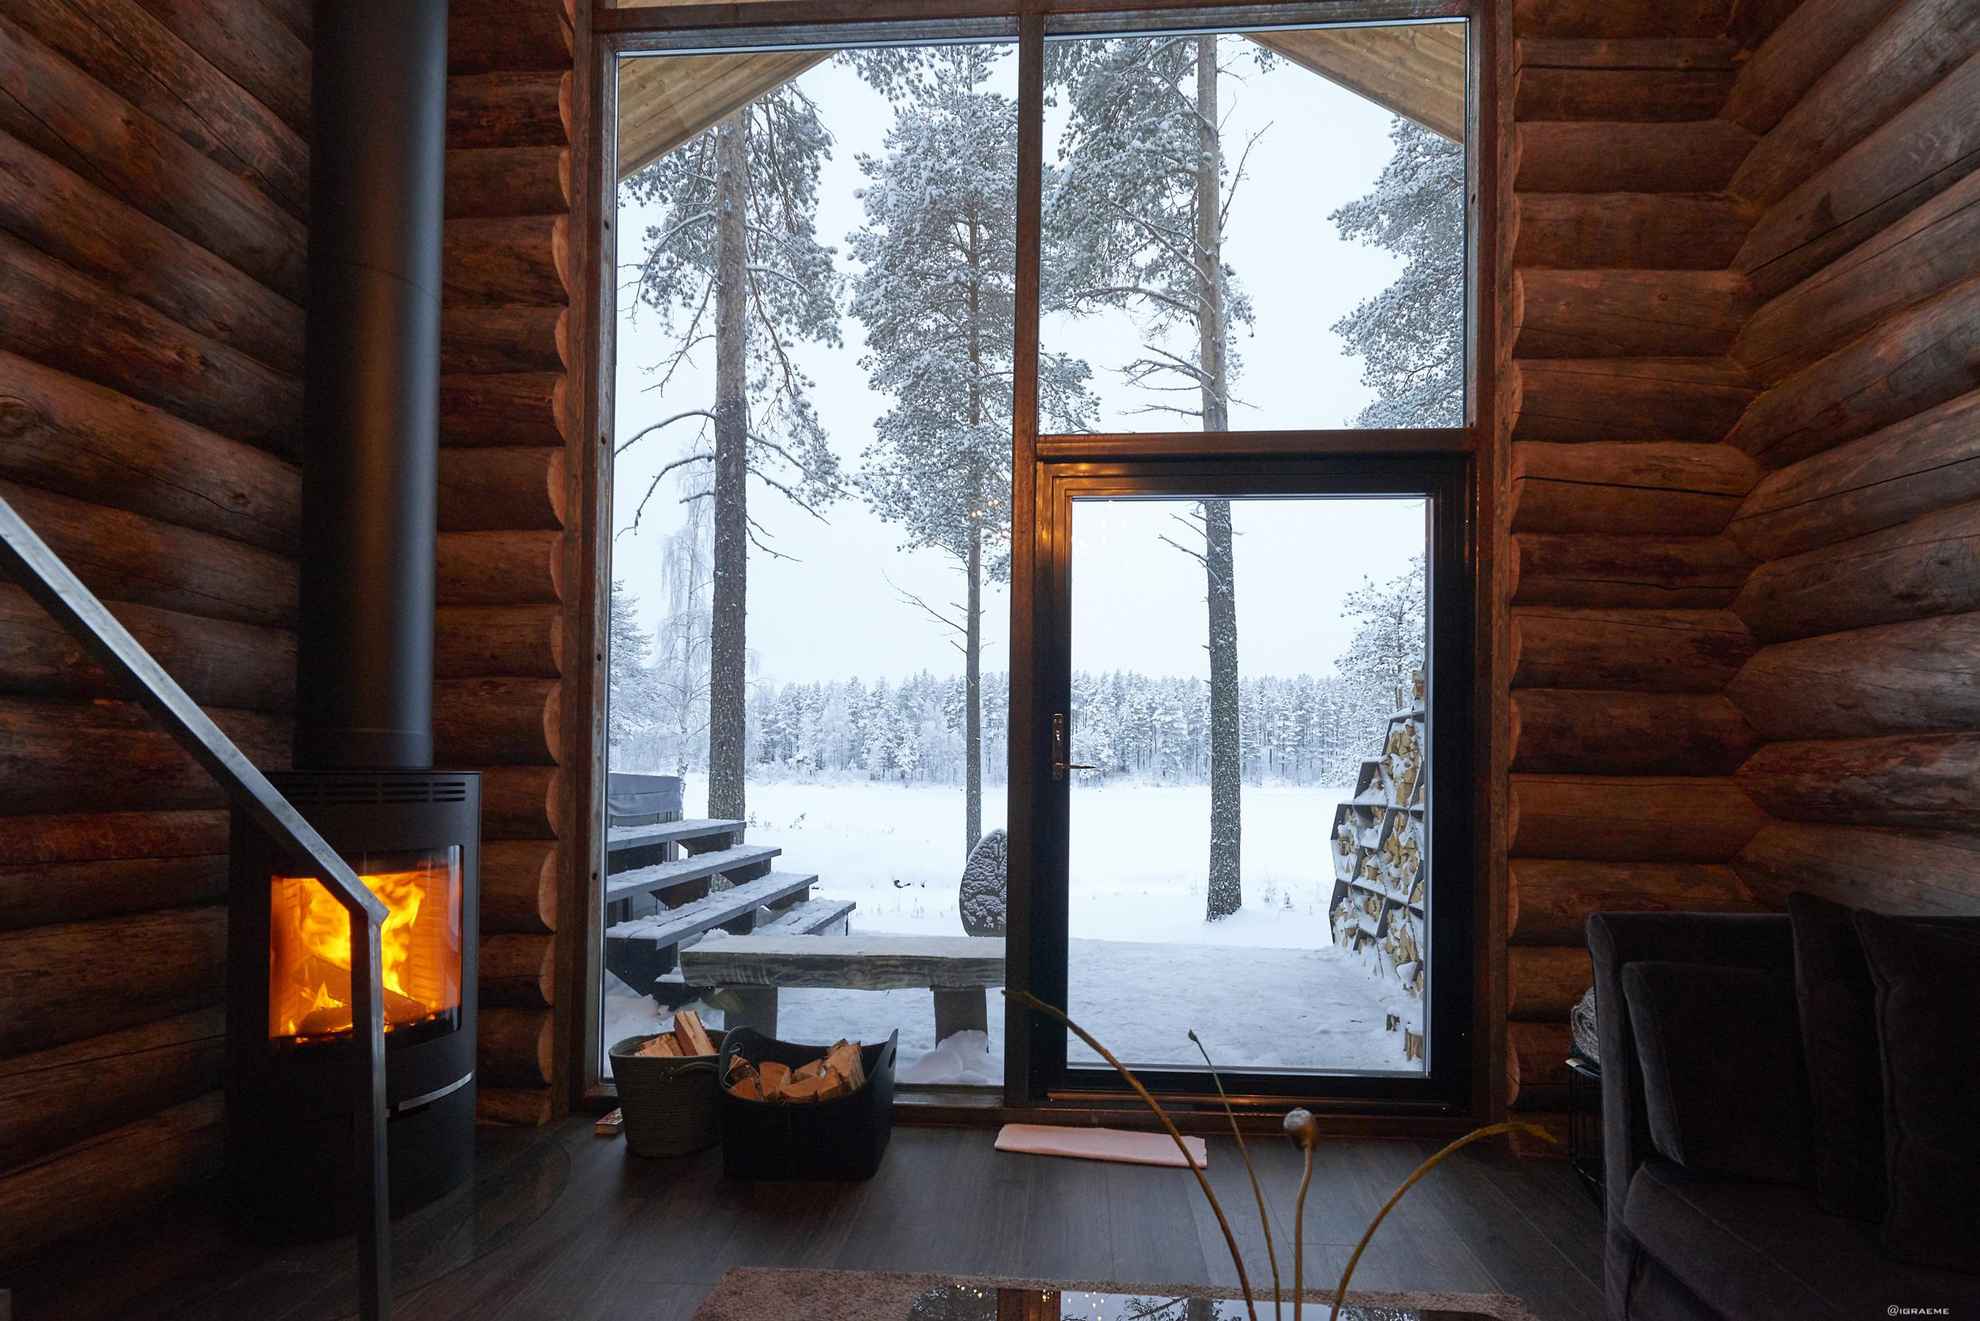 Une cabane en rondins en bois comprenant de larges ouvertures et un feu de cheminée. Il neige dehors.